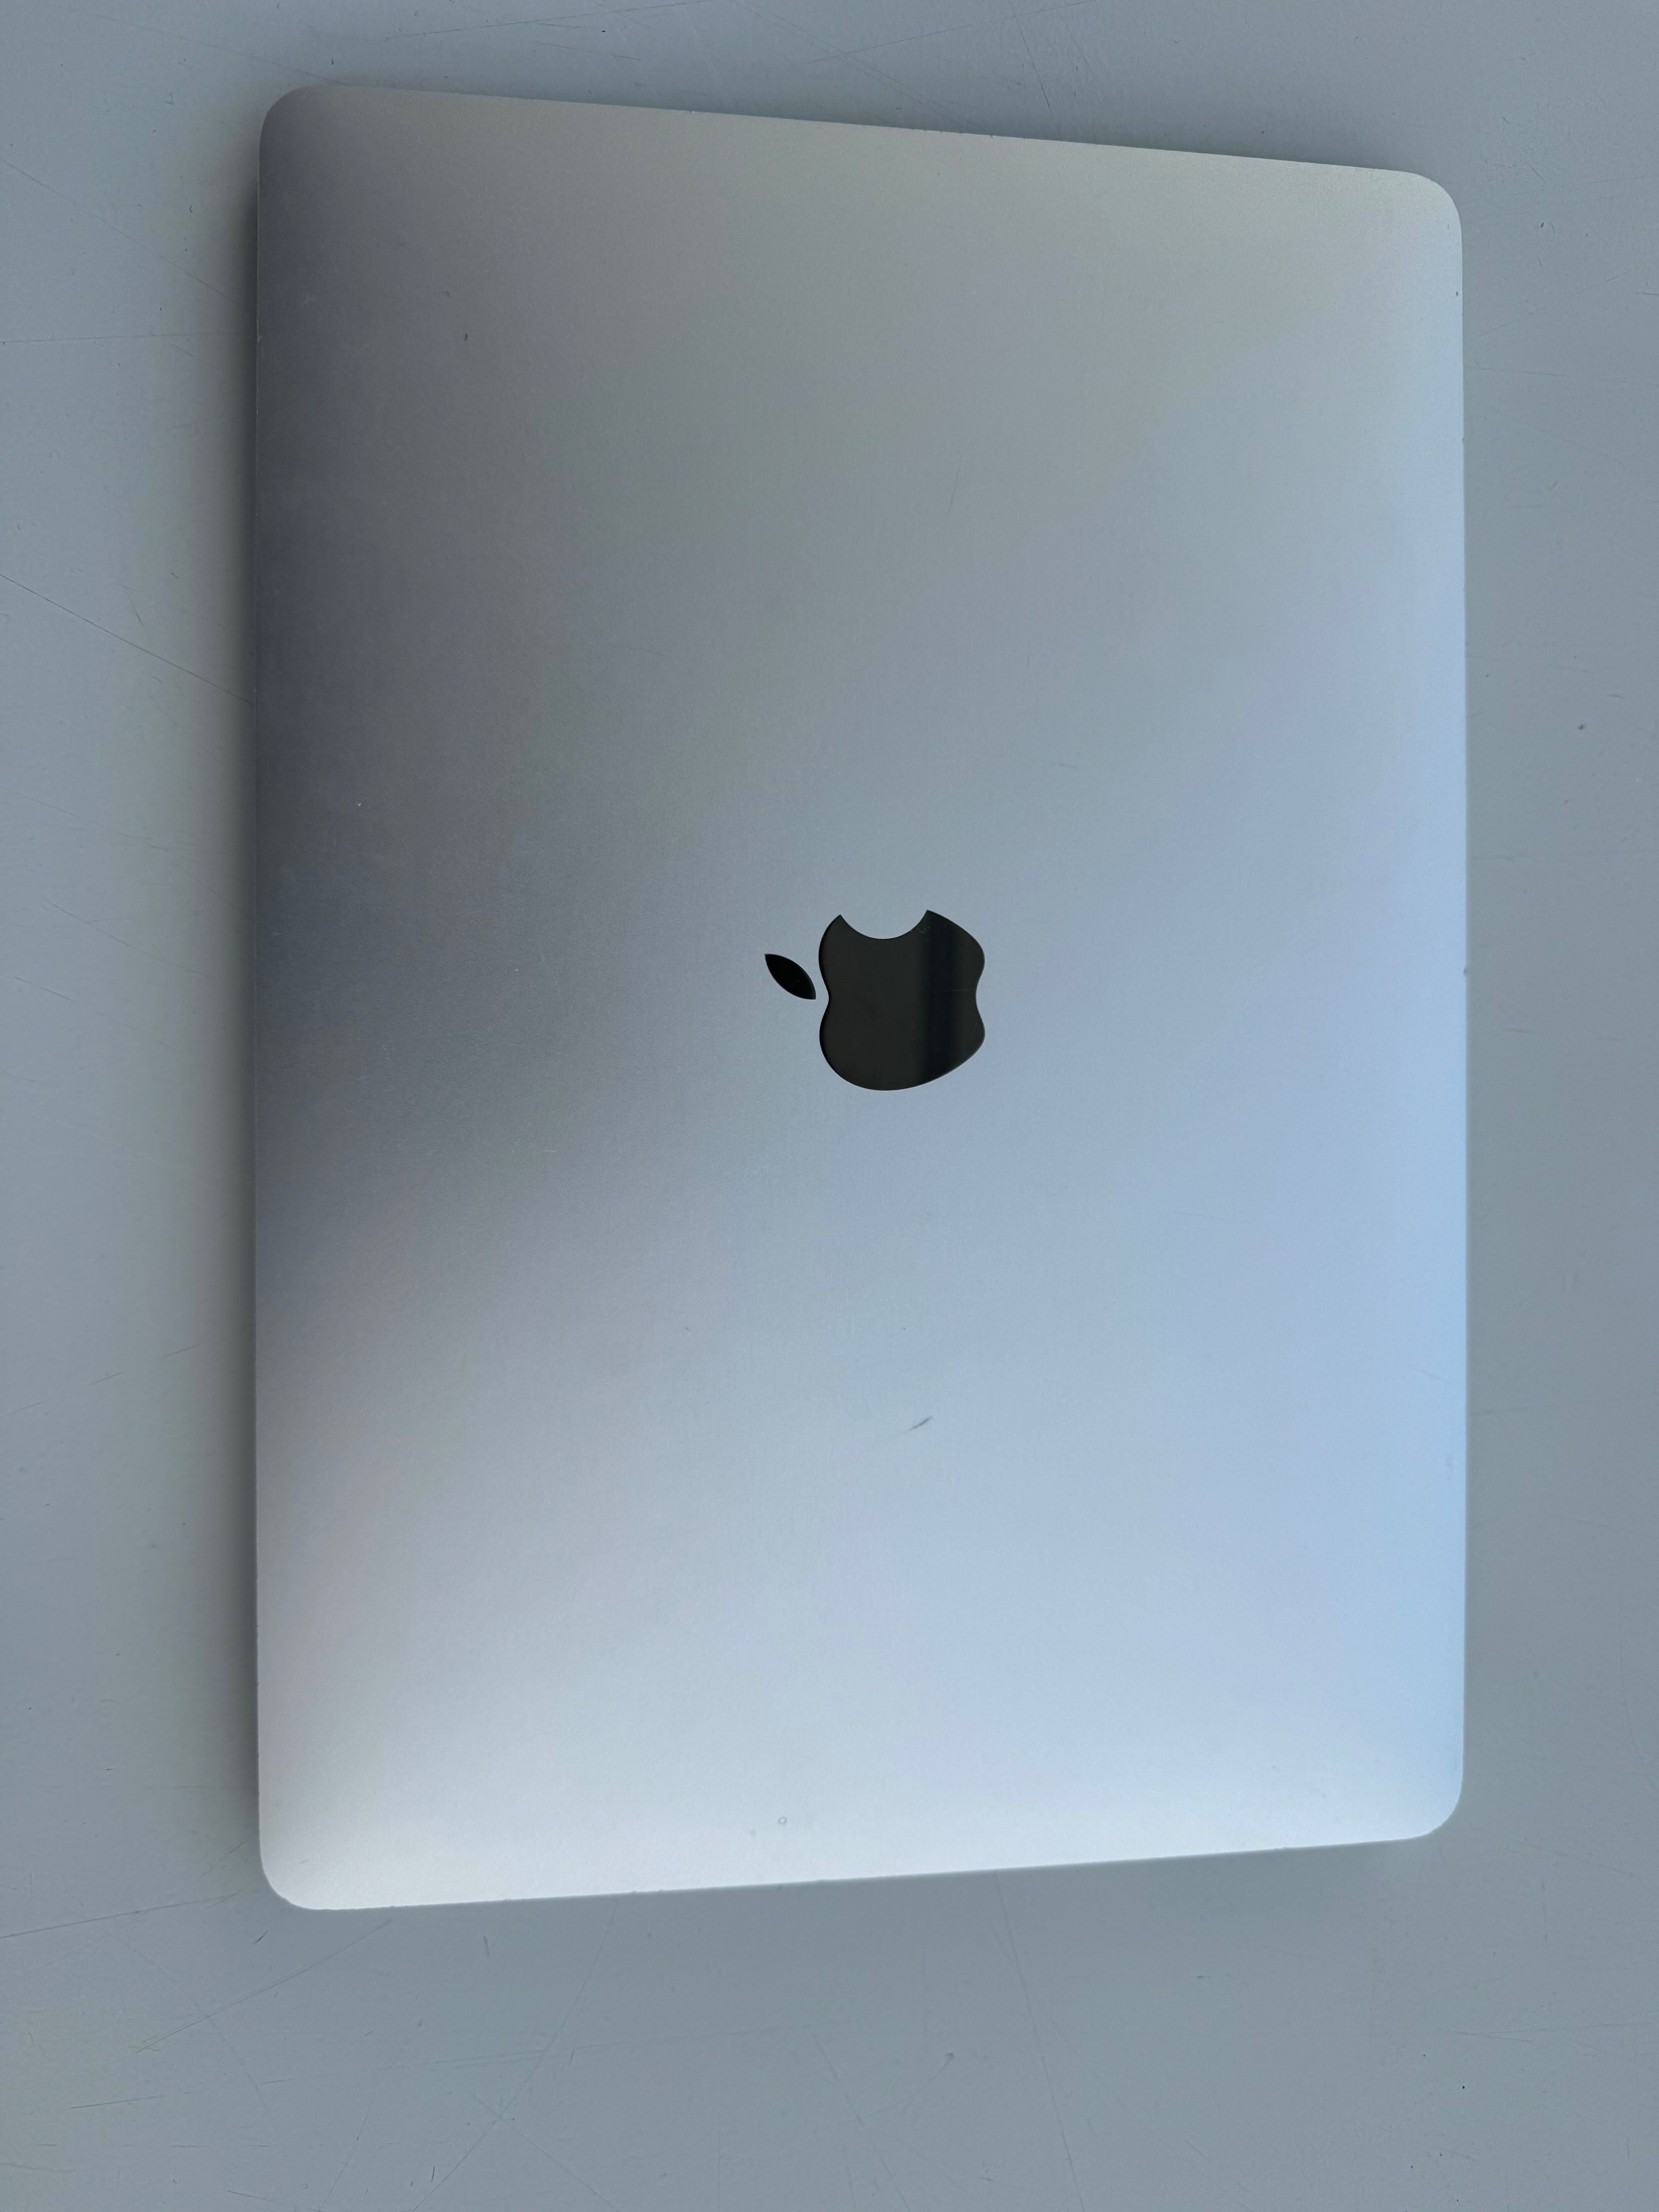 Apple Macbook pro 13